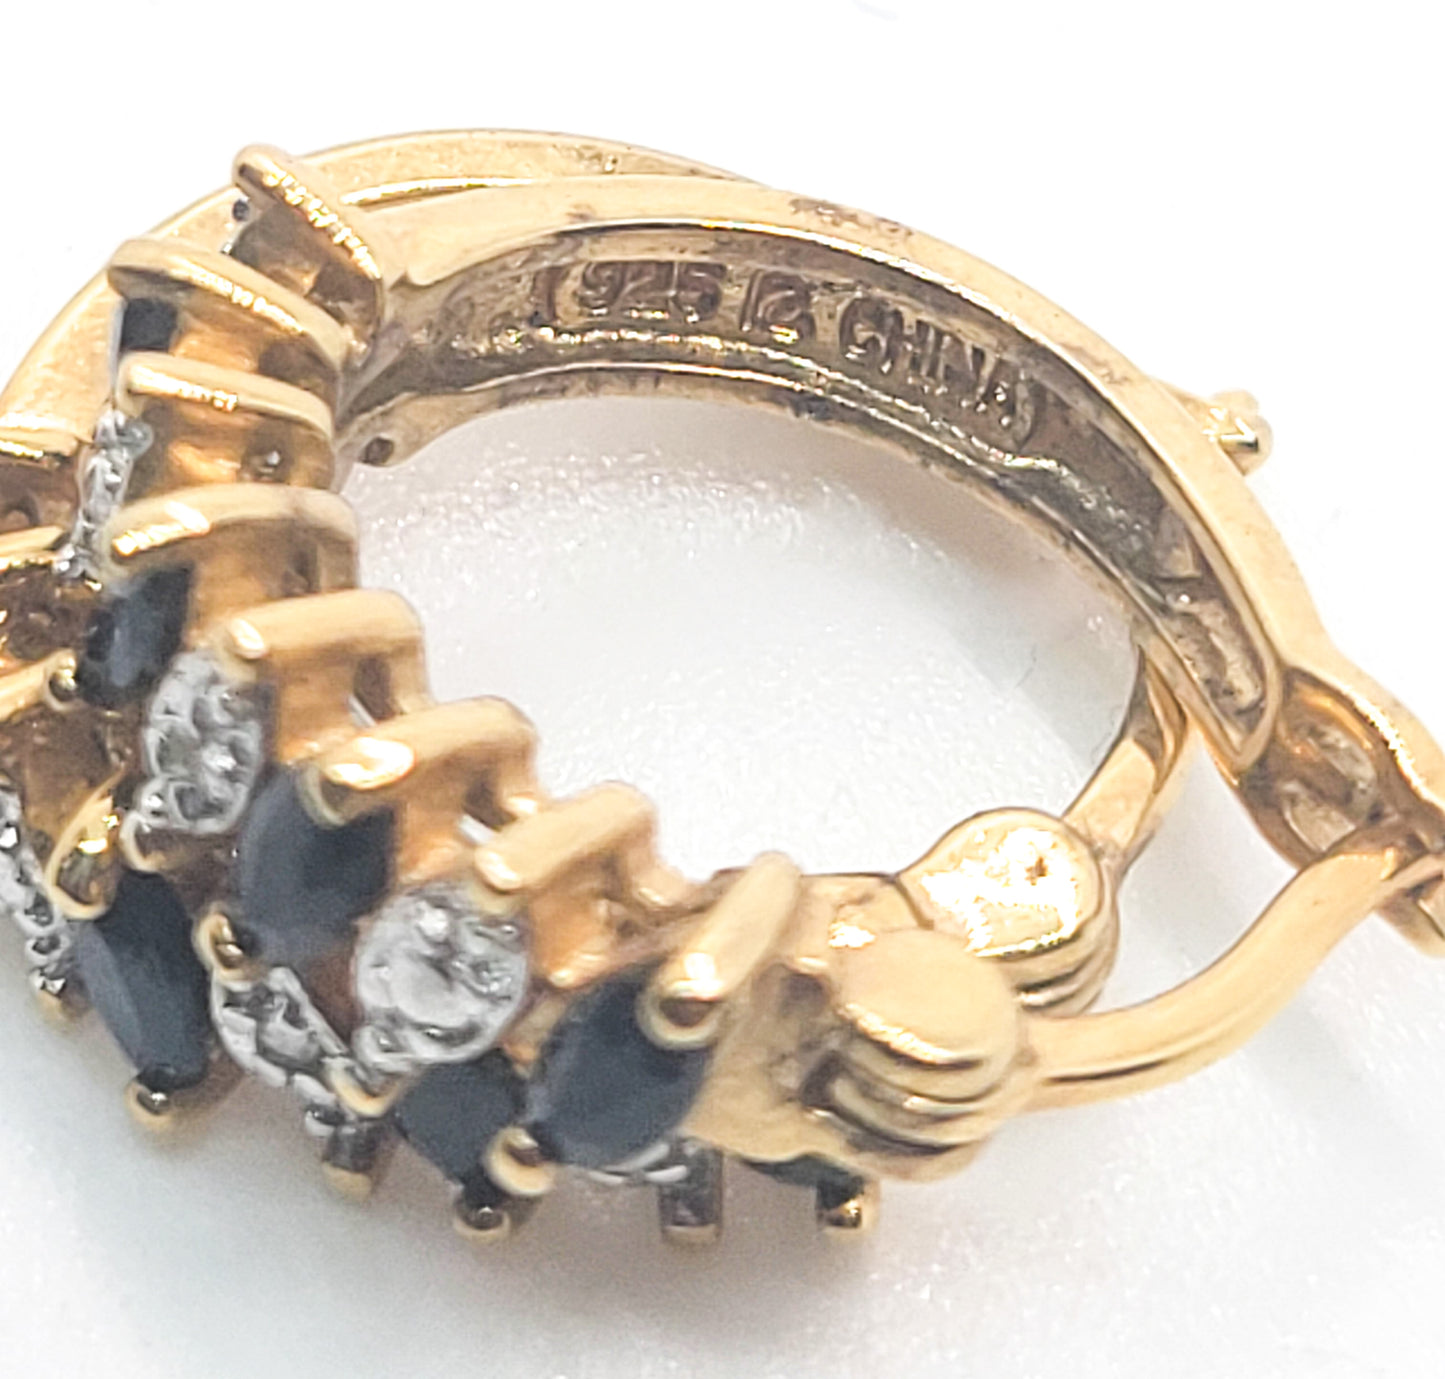 Black spinel gold over sterling silver vintage leverback hoop earrings